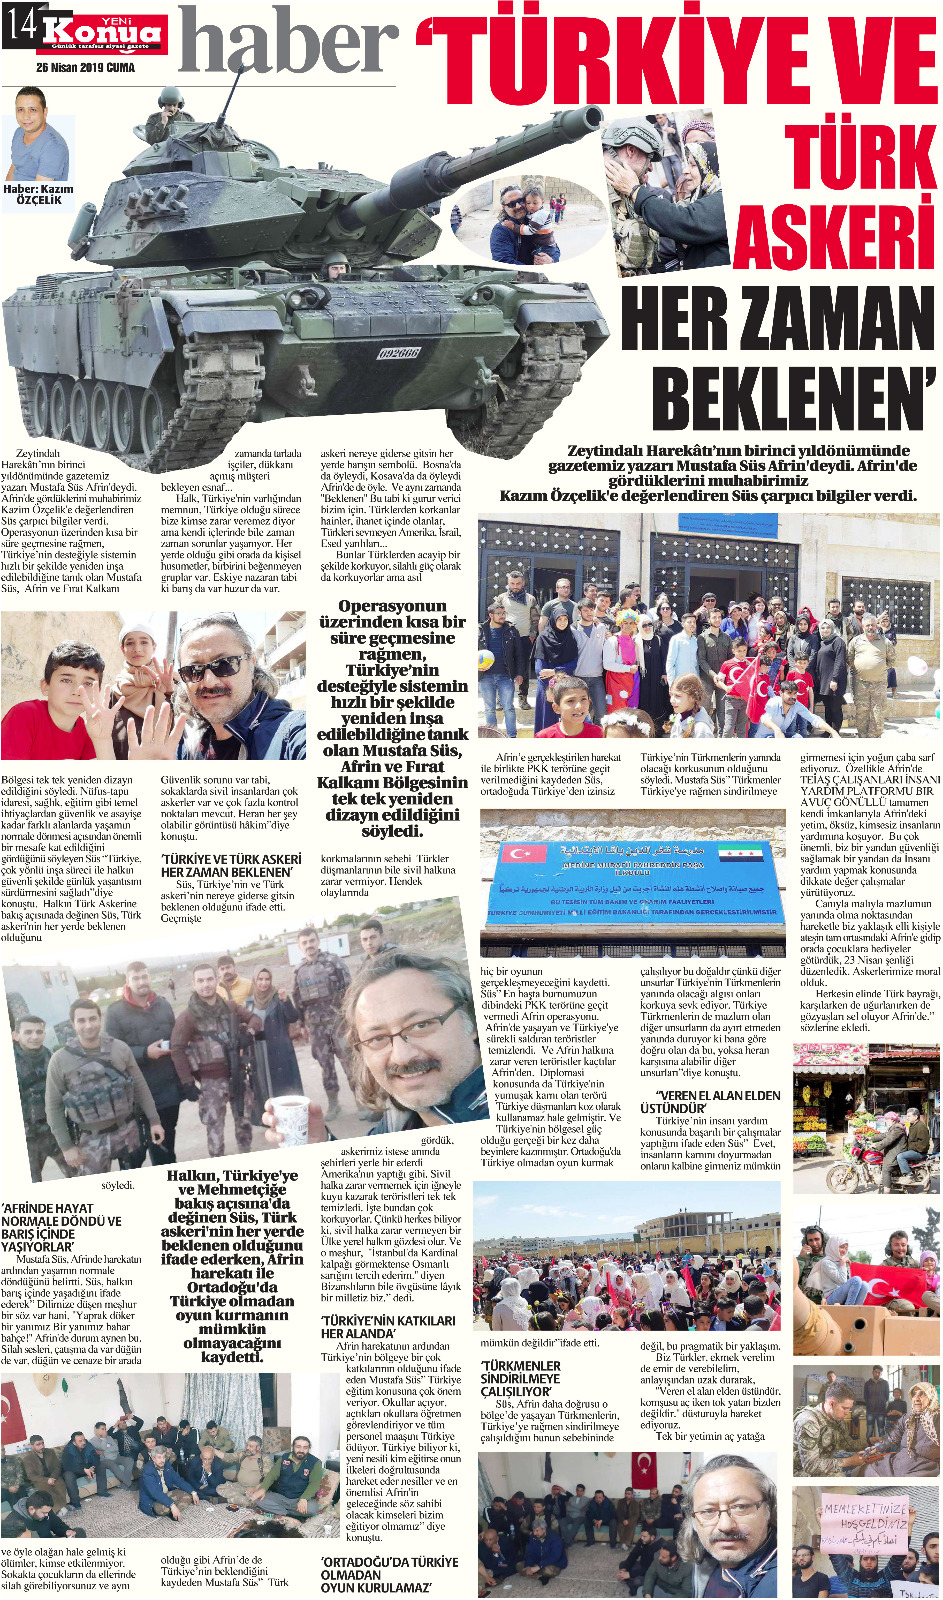 Afrin Gezisi İle İlgili Söyleşi  (Yeni Konya Gazetesi)